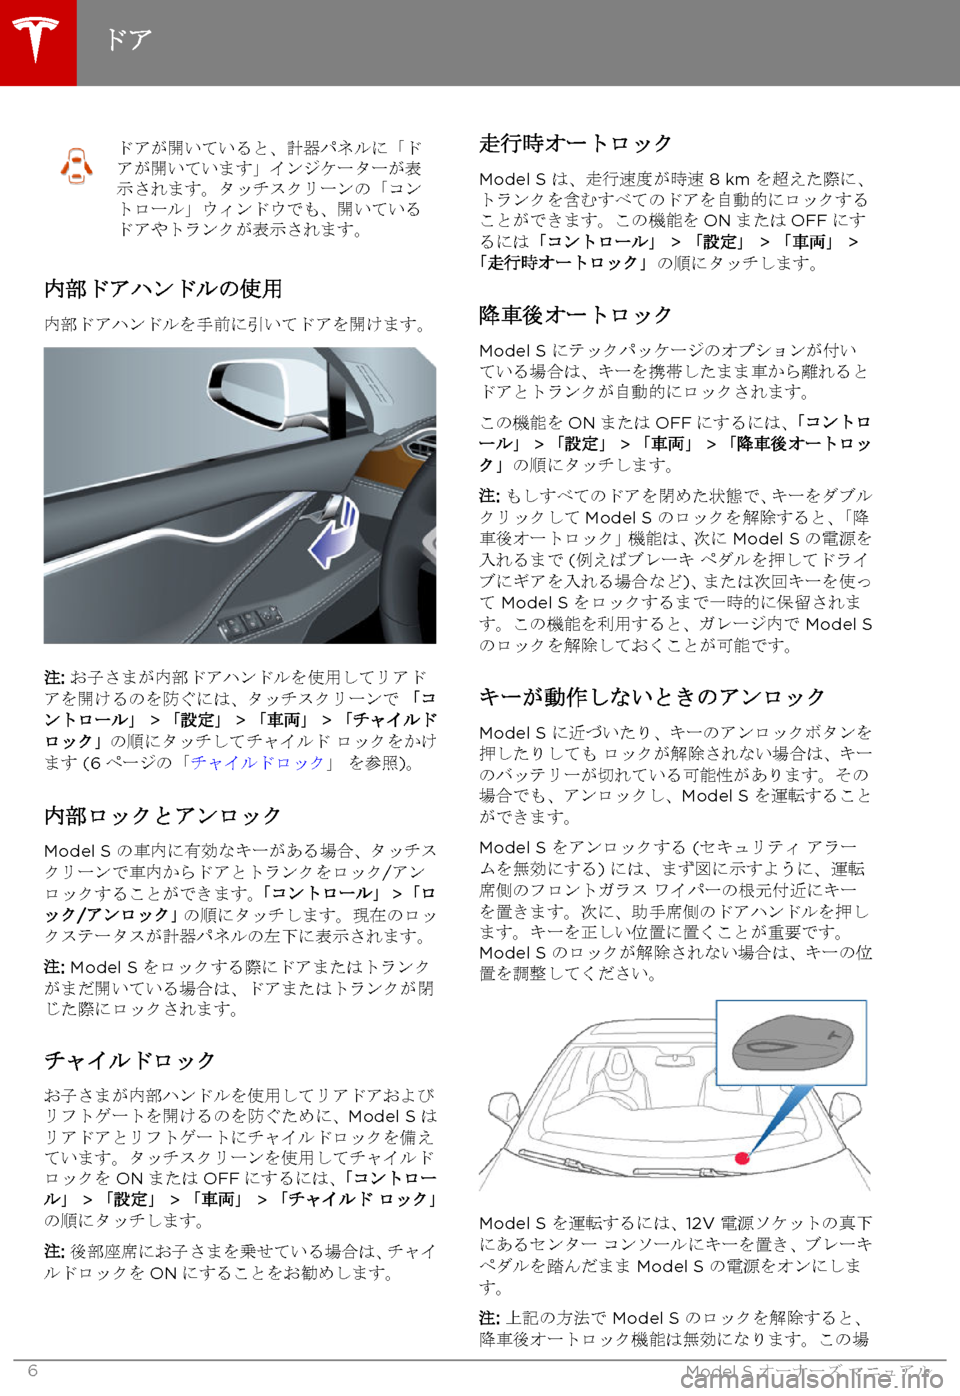 TESLA MODEL S 2015  取扱説明書 (in Japanese)  ドアが開いていると、計器パネルに「ドアが開いています」インジケーターが表示されます。タッチスクリーンの「コントロール」ウィンドウでも�